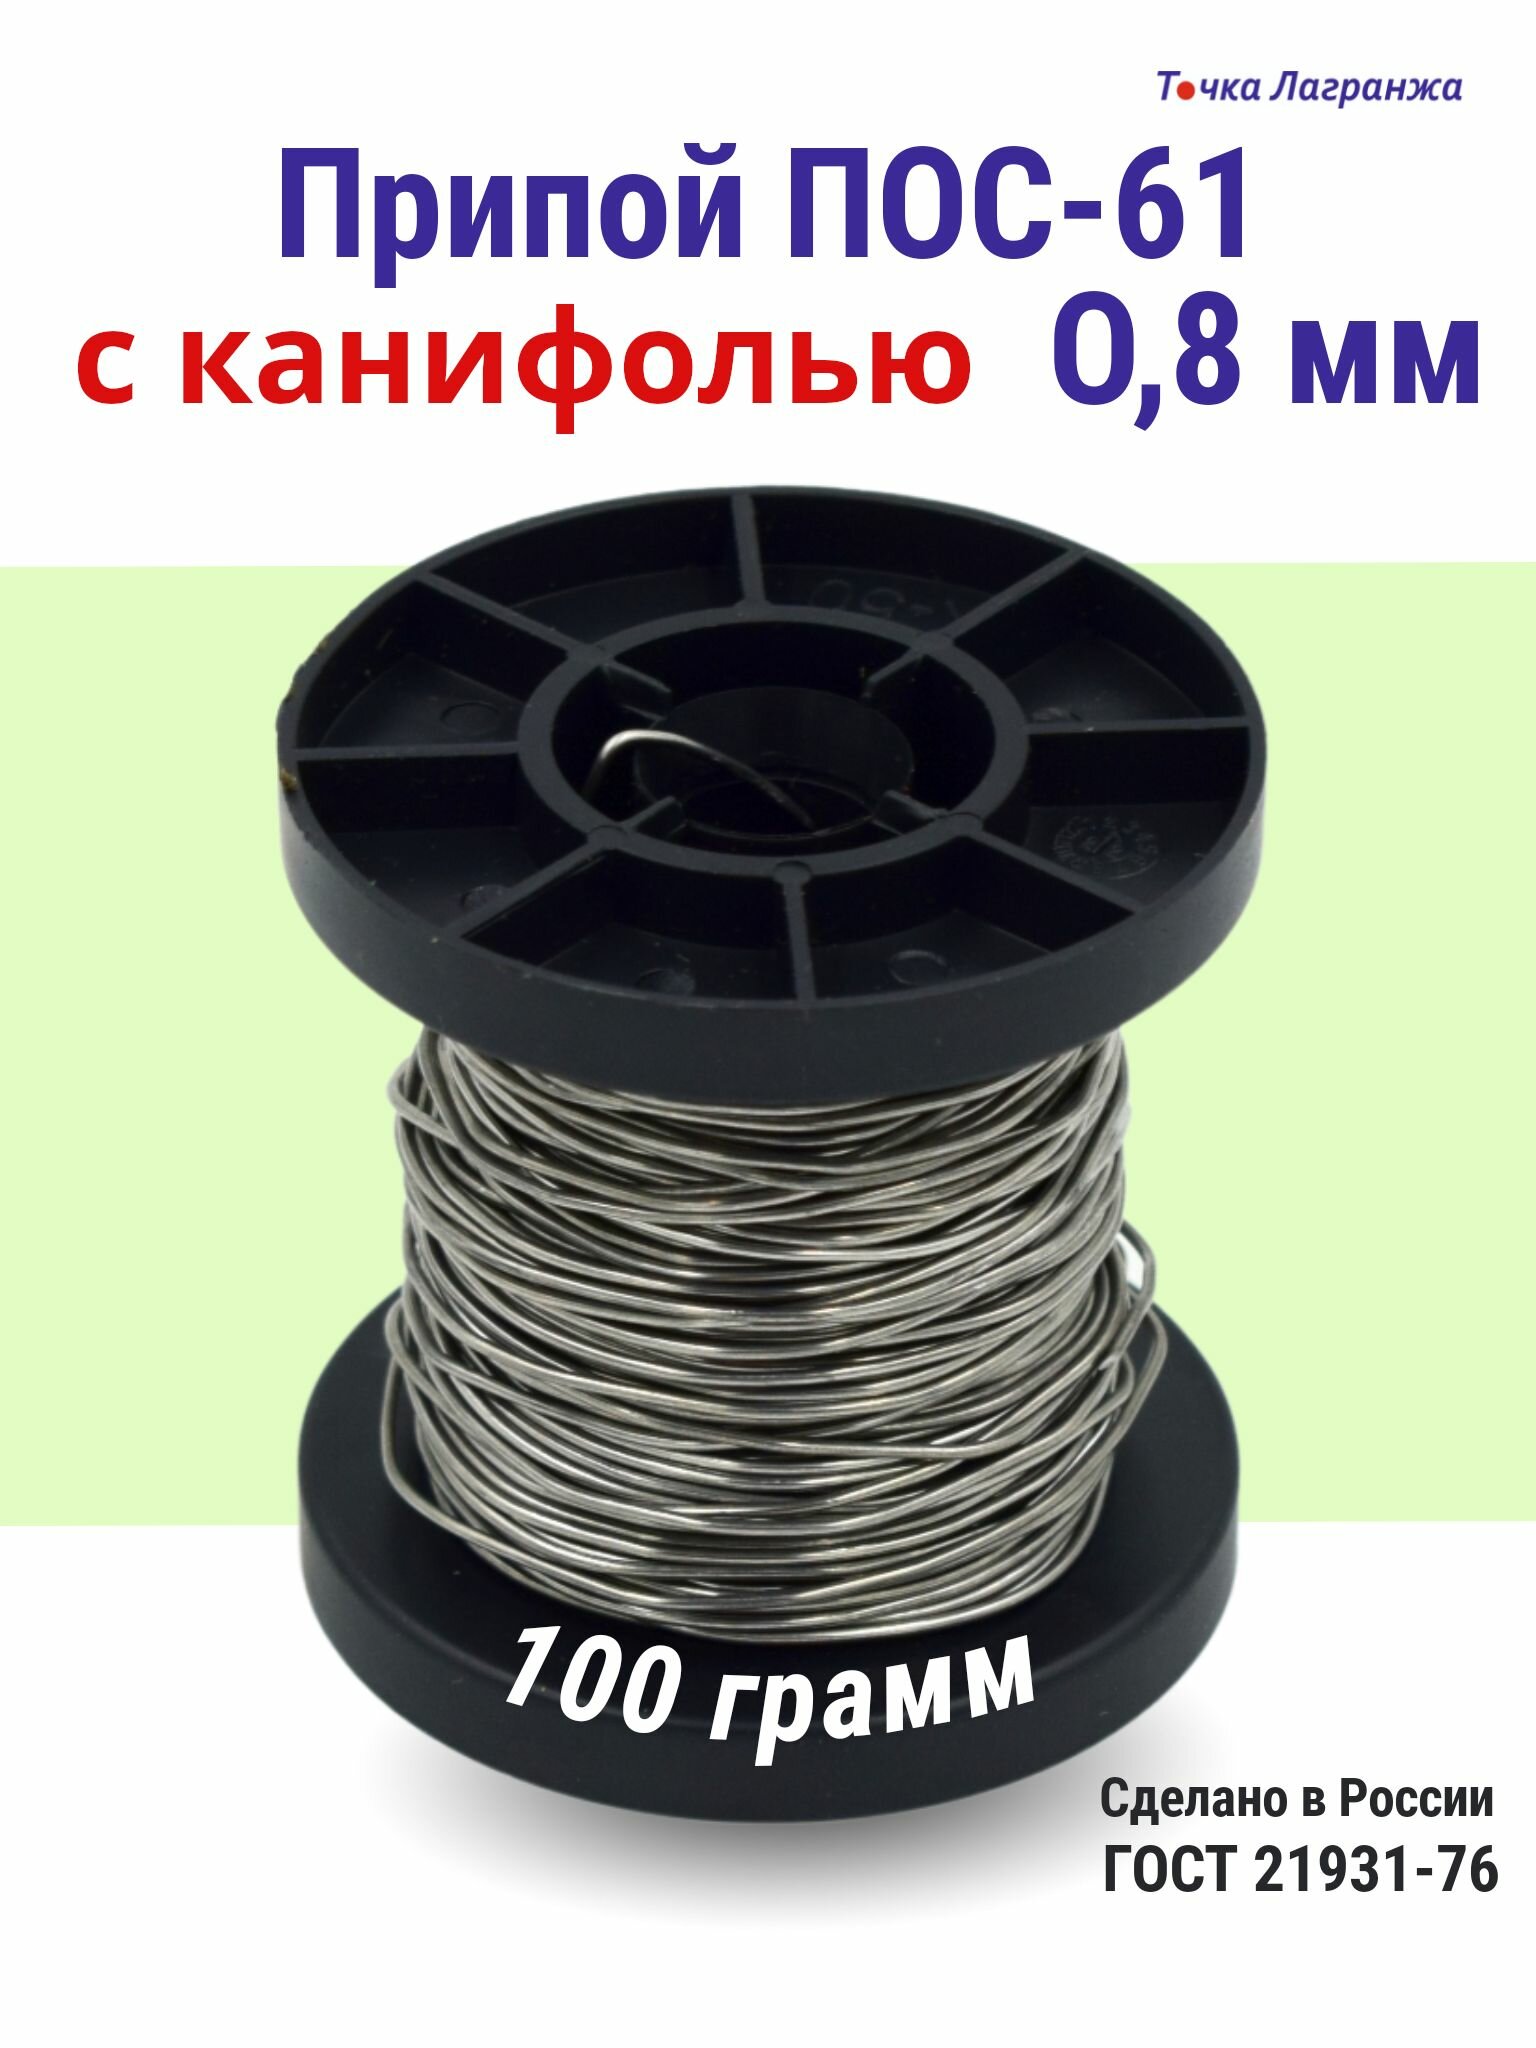 Припой для пайки (олово для пайки) ПОС-61 диаметр 0,8 мм с канифолью мм 100 грамм на катушке (общий вес 120 гр.)